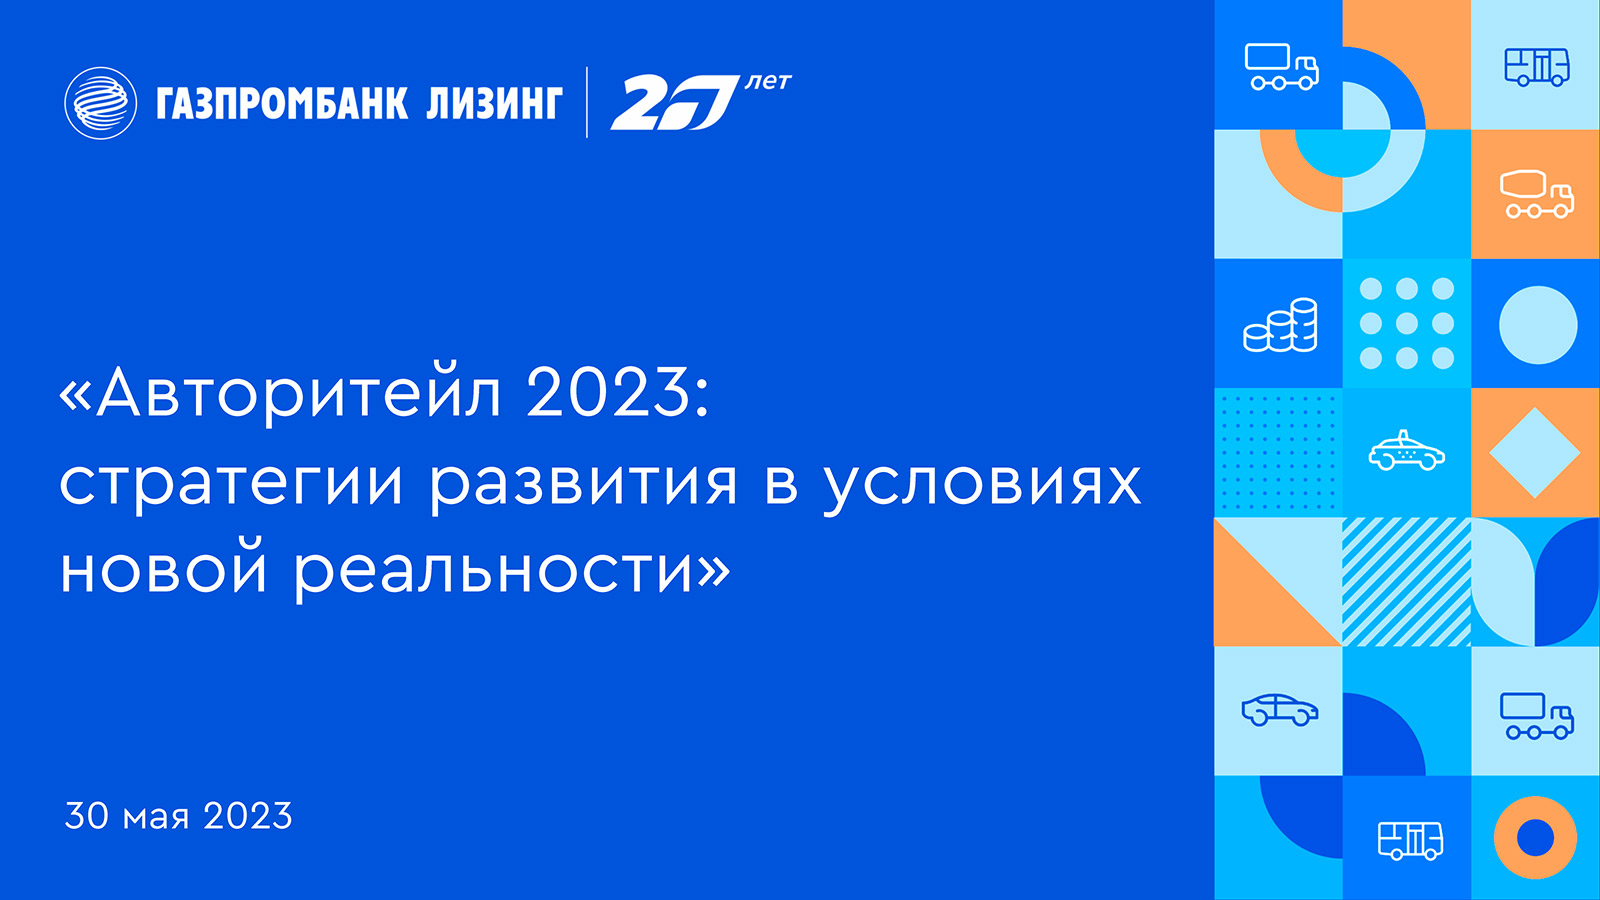 Газпромбанк Лизинг 30 мая проведет бизнес-завтрак «Авторитейл 2023: Стратегии развития в условиях новой реальности»